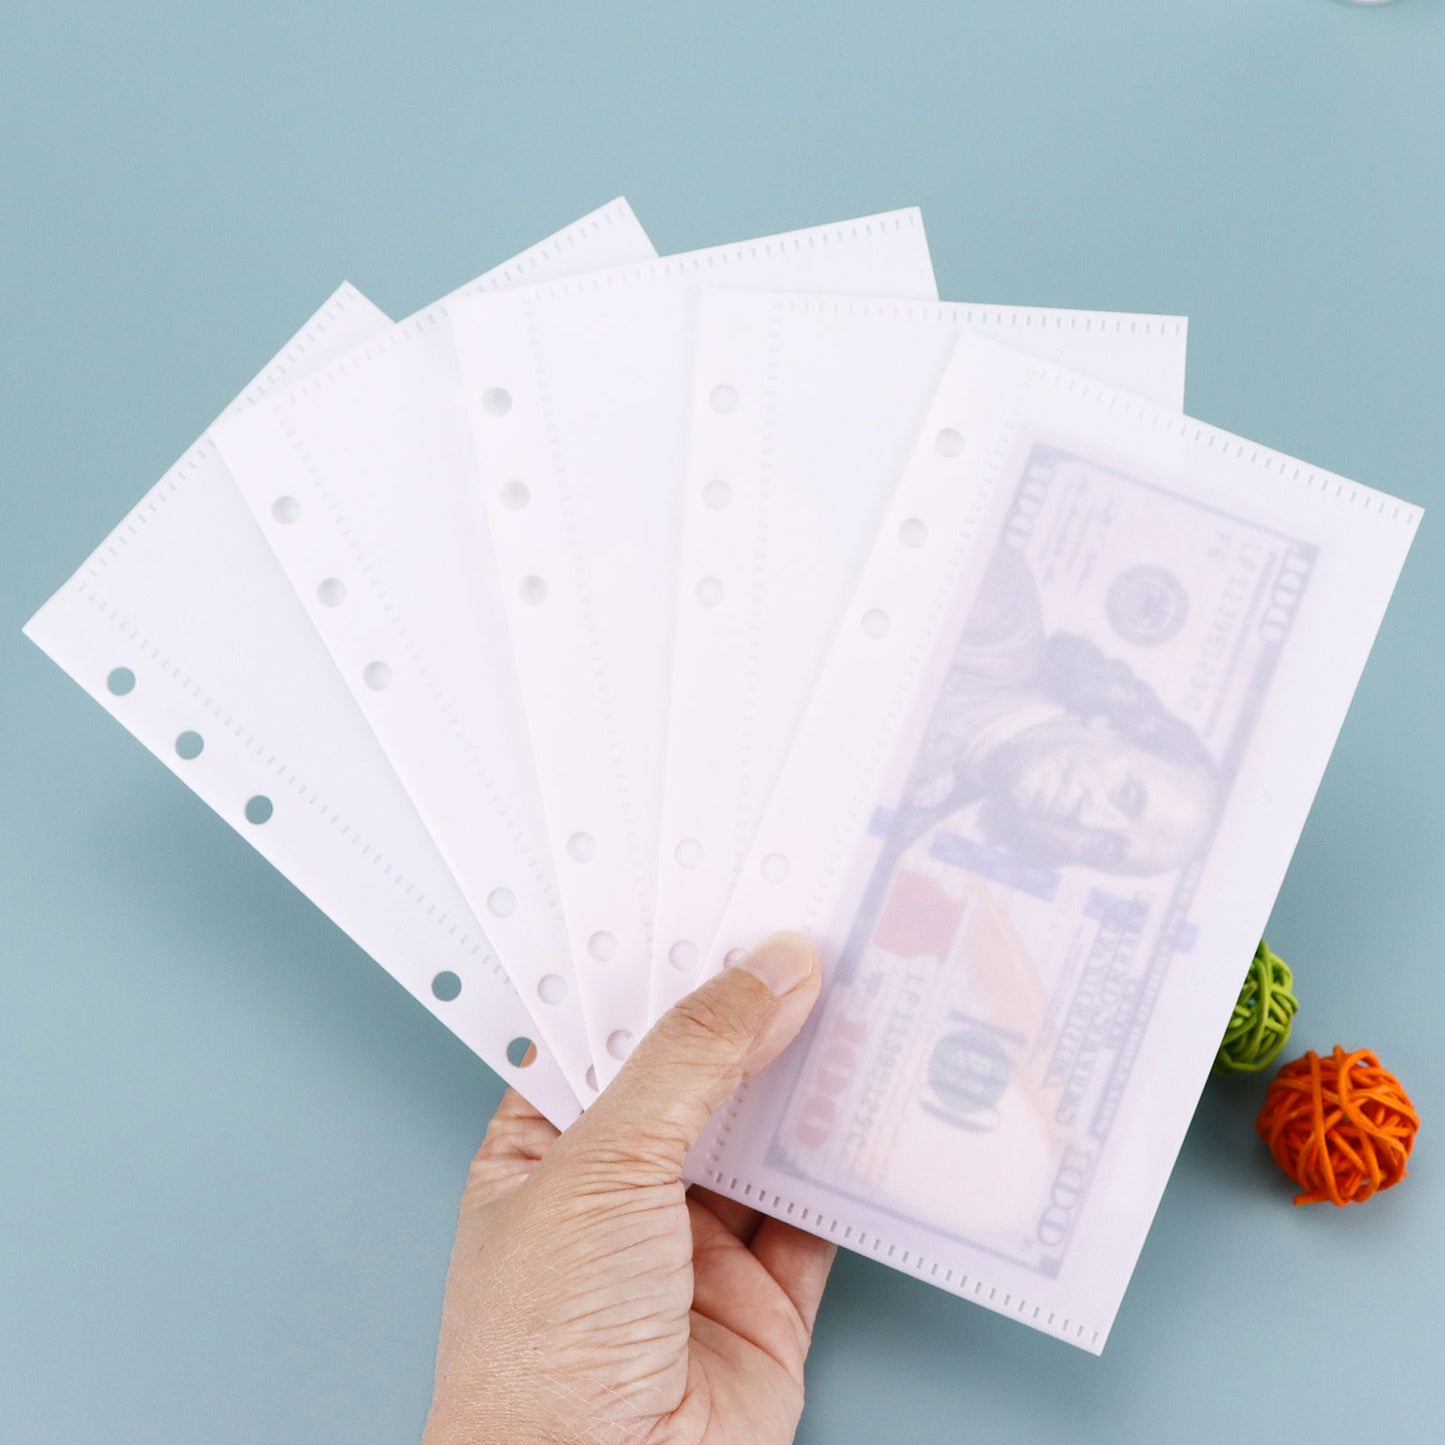 Plastic A6 Cash envelopes 5pcs per set